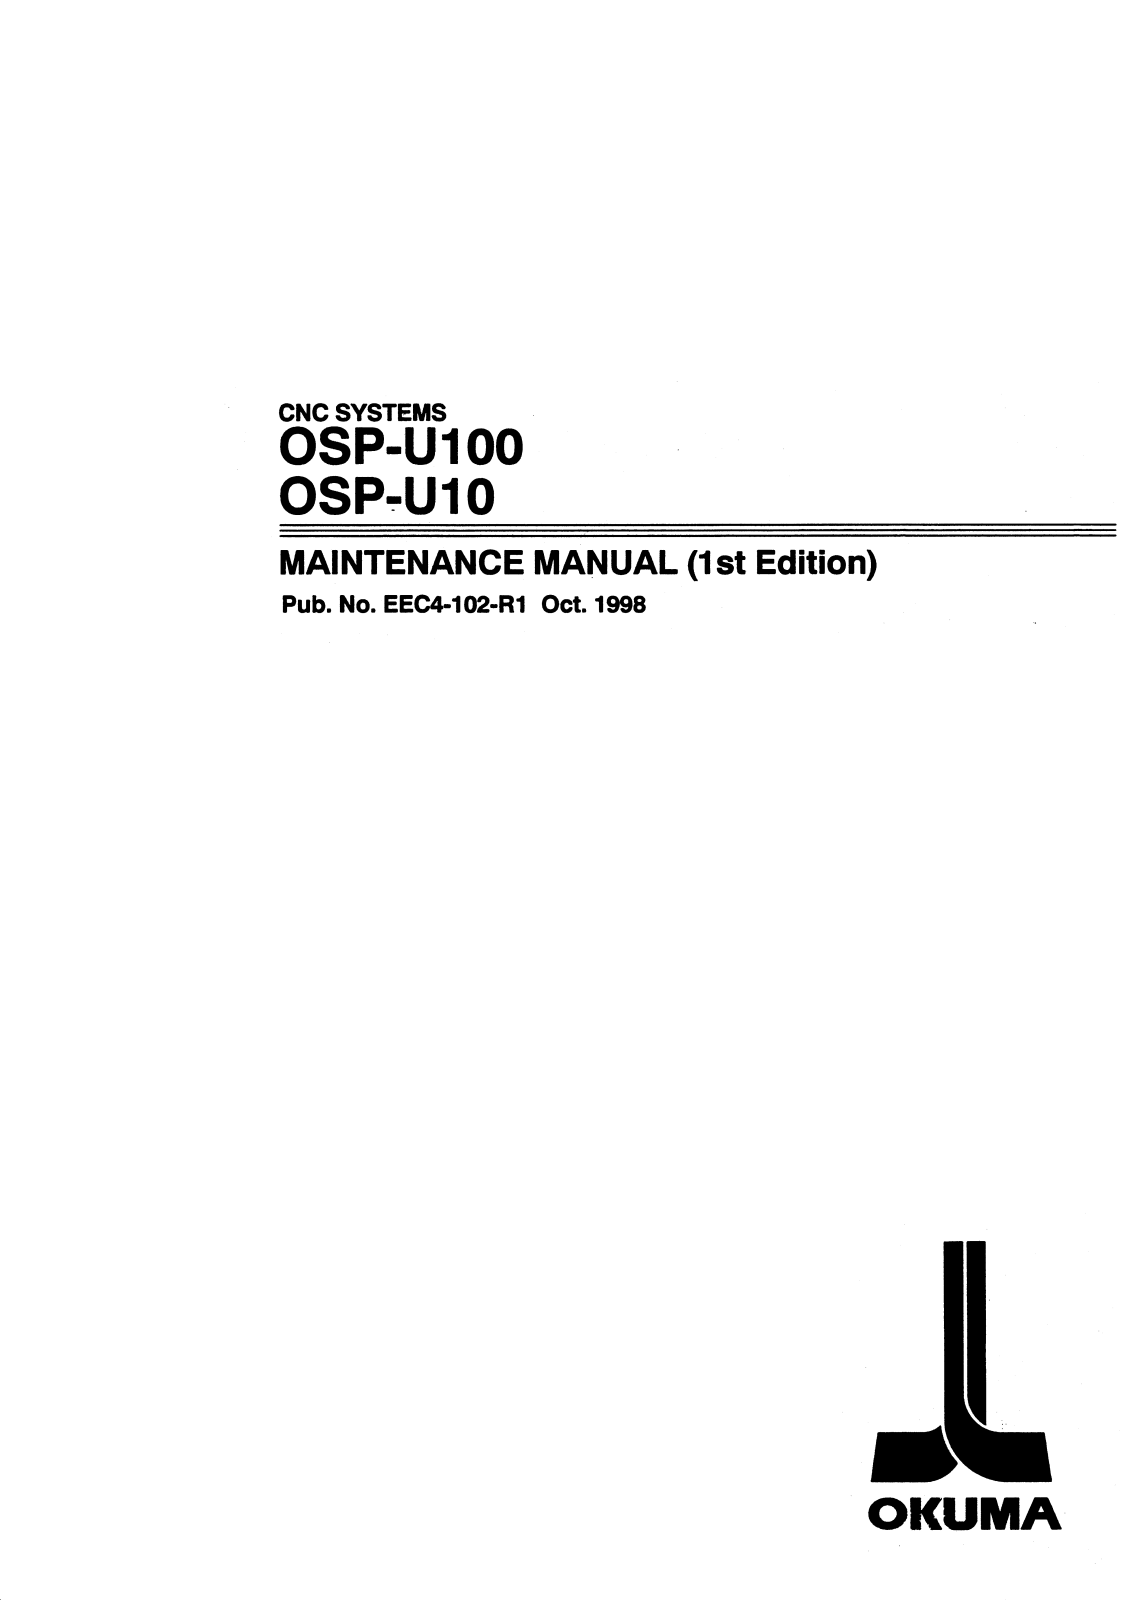 okuma OSP-U100, OSP-U10 Maintenance Manual